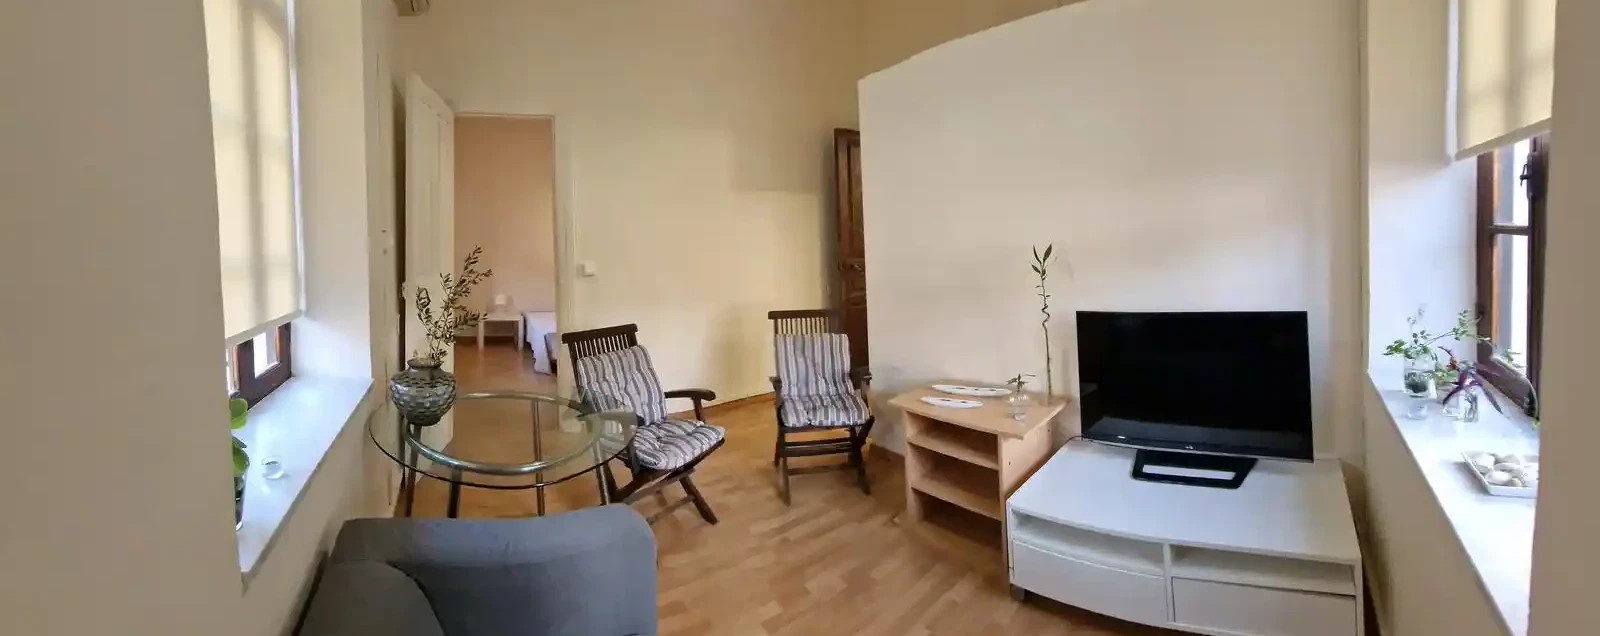 1-bedroom semi-detached to rent €1.300, image 1